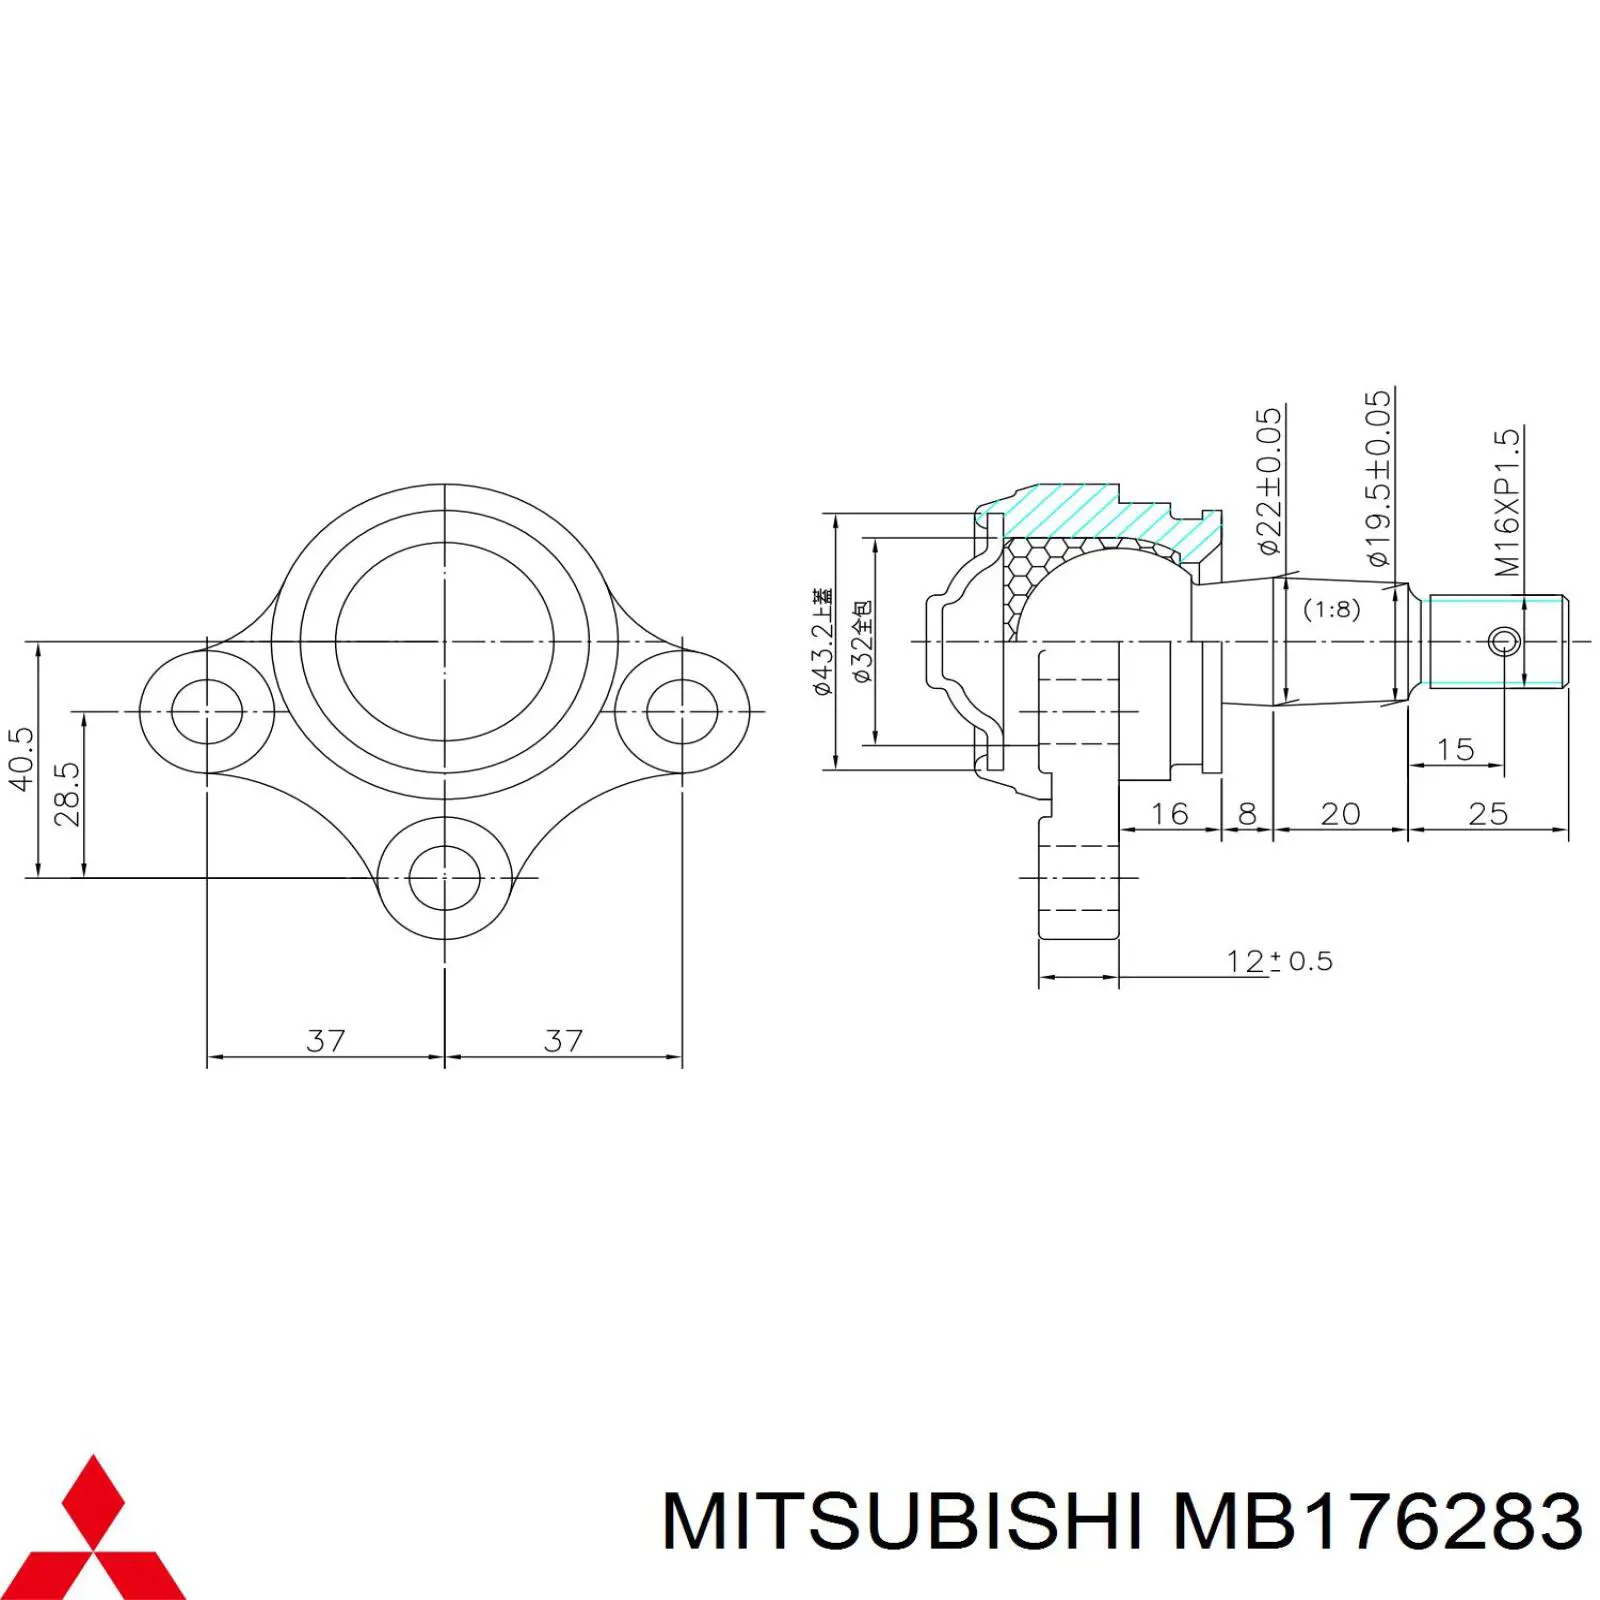 MB176283 Mitsubishi rótula de suspensión inferior